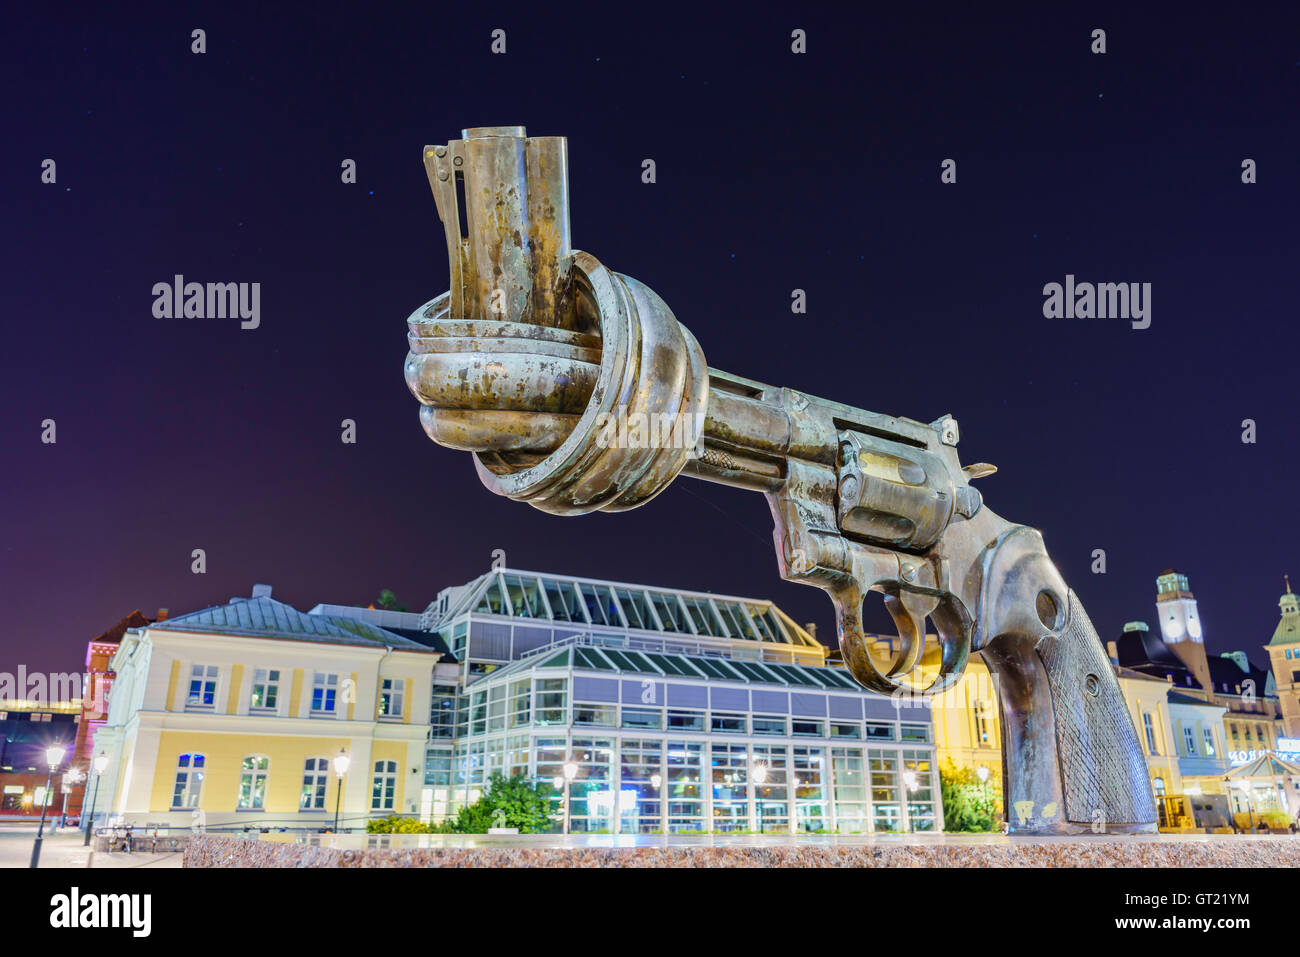 La célèbre statue de pistolet noué à Malmö, Suède nuit Banque D'Images